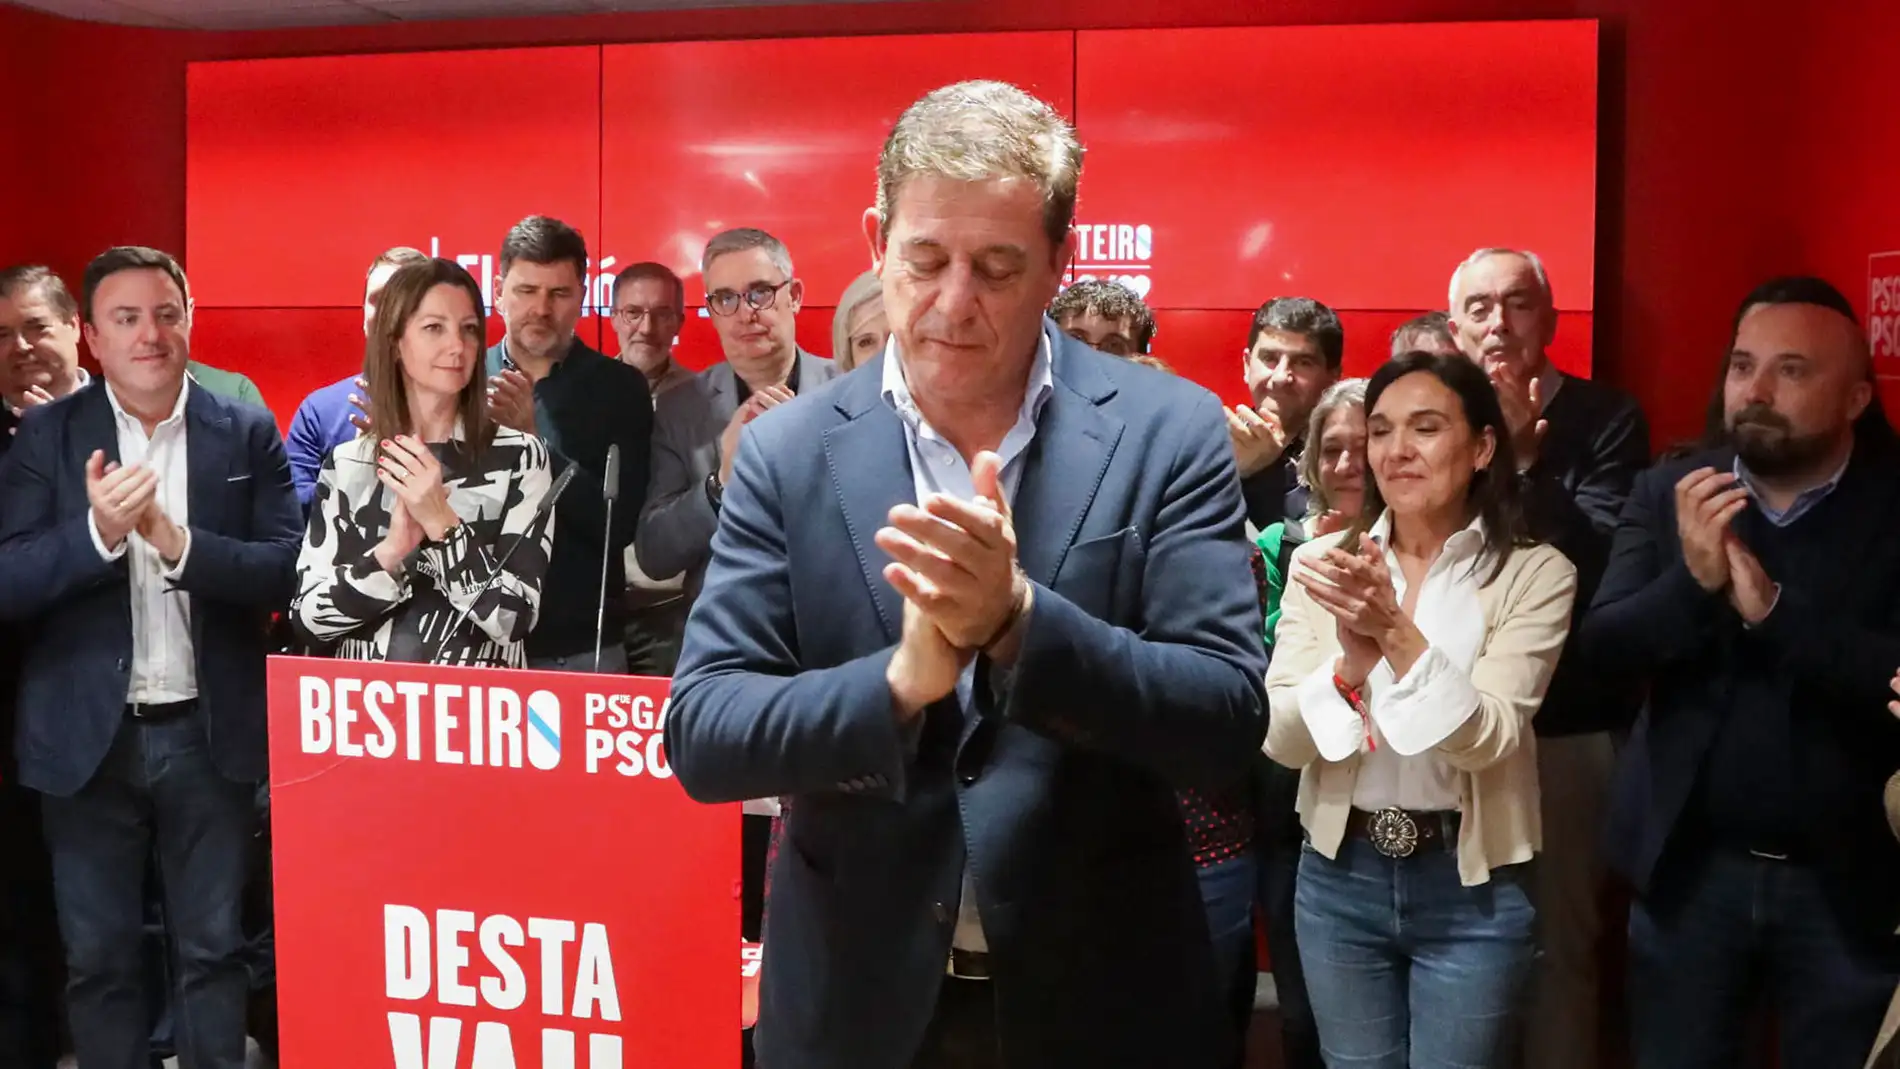 El candidato del PSOE en Galicia, José Ramón Gómez Besteiro, tras el resultado electoral